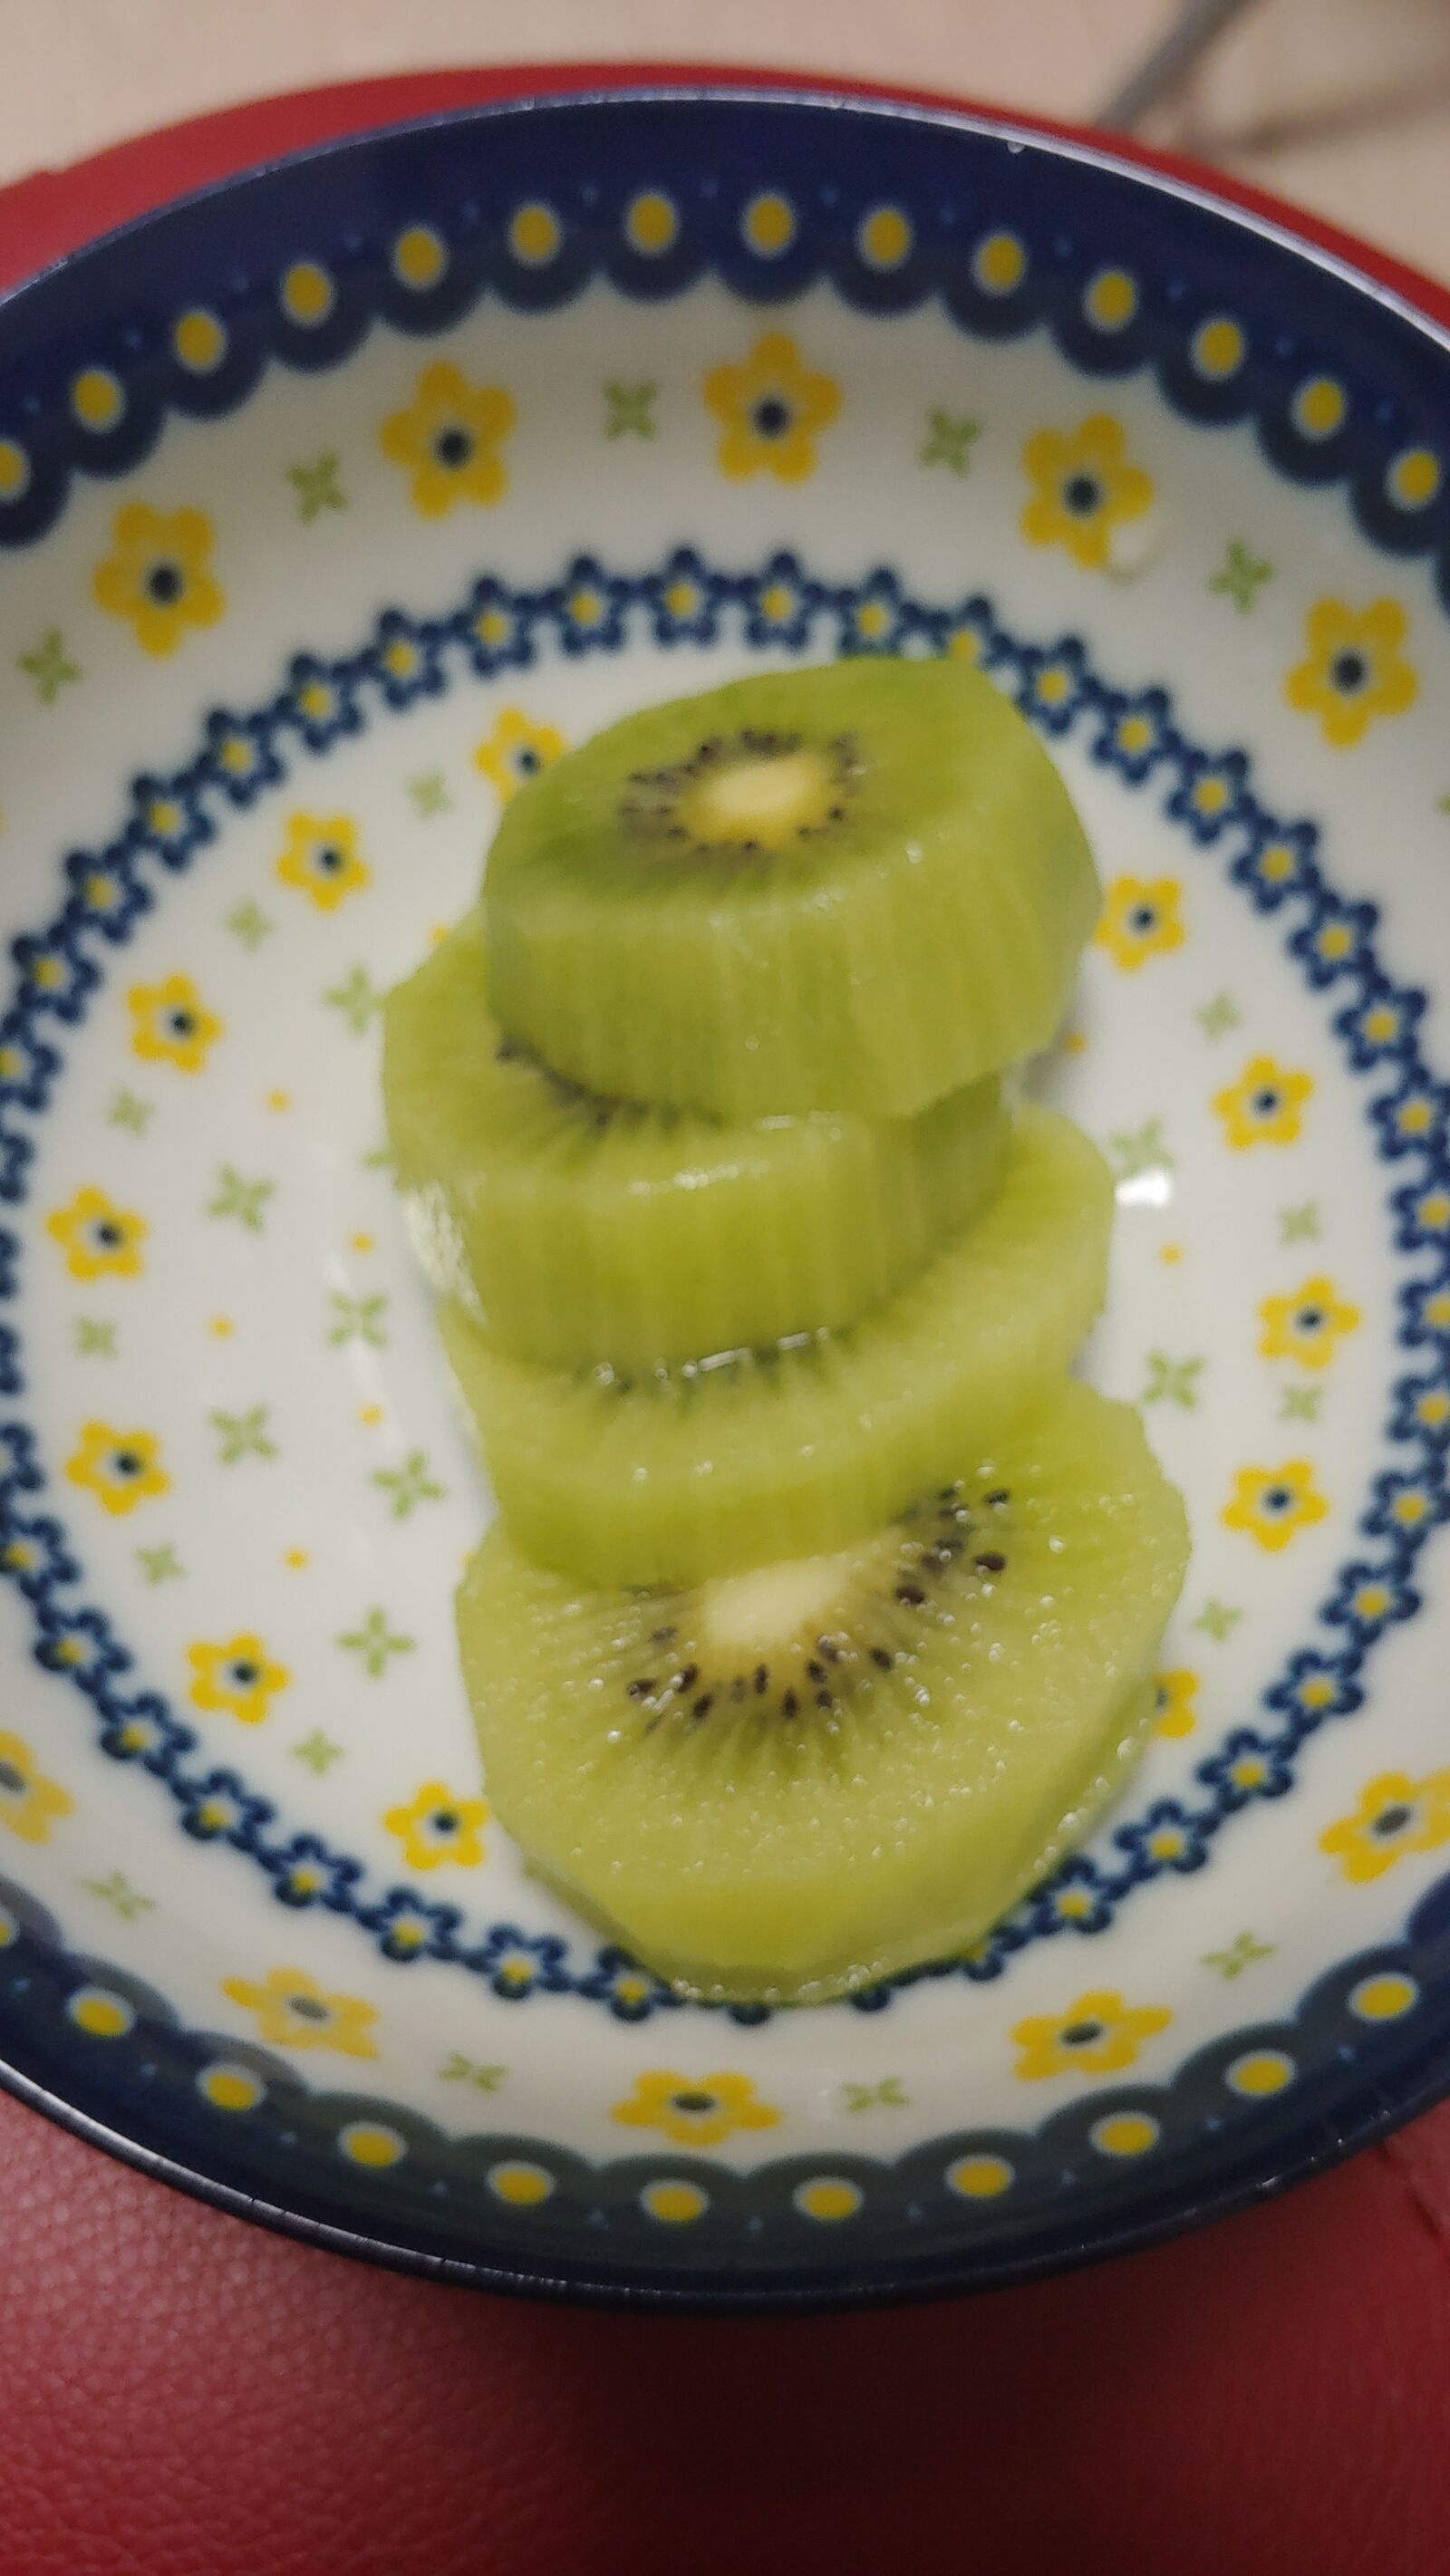 LG G7 THINQ sample photo. Kiwi, fruit, plate photography